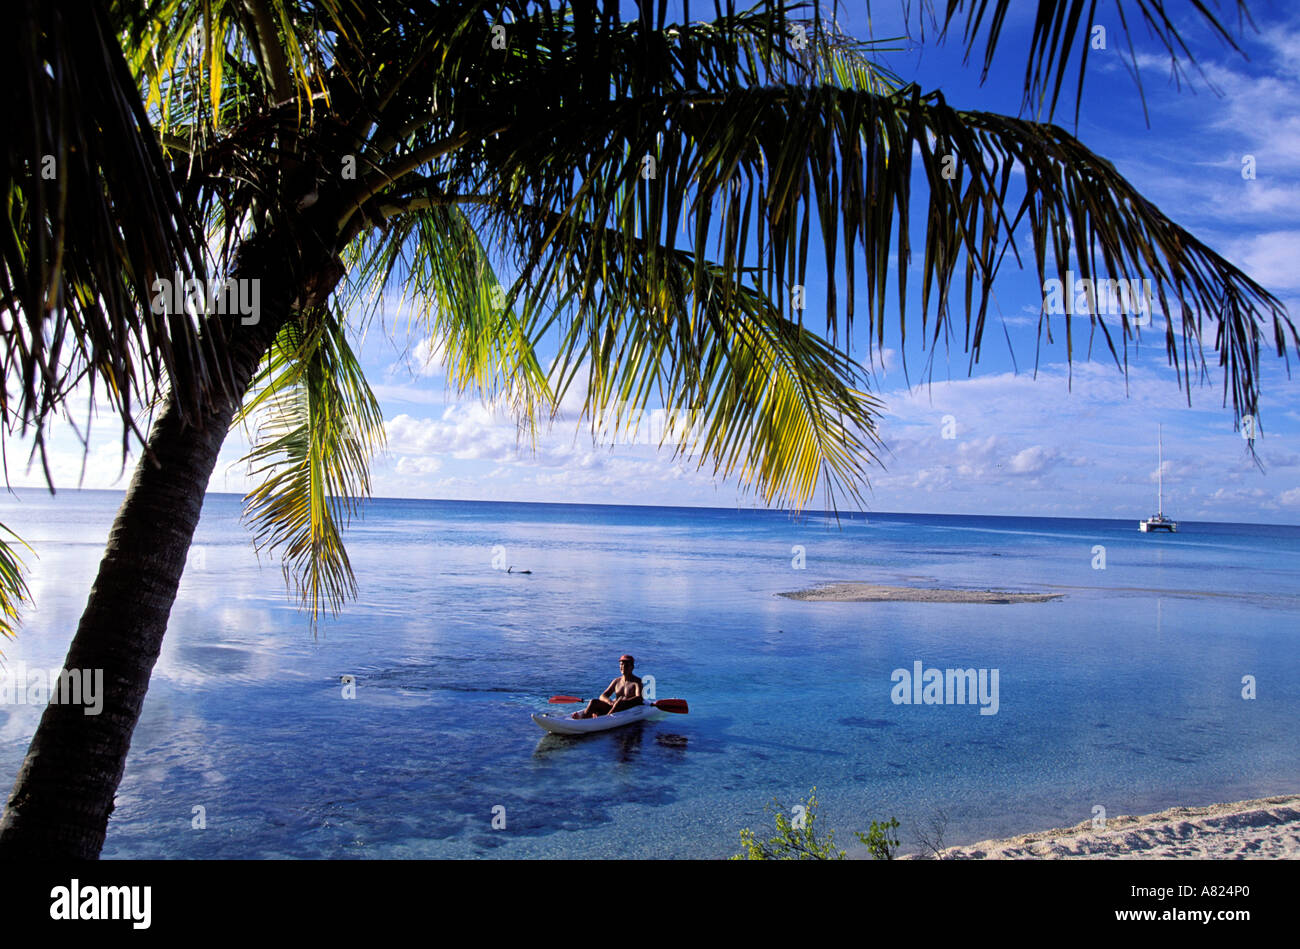 Francia Polinesia francese Isole Tuamotu, Rangiroa, isola corallina Foto Stock